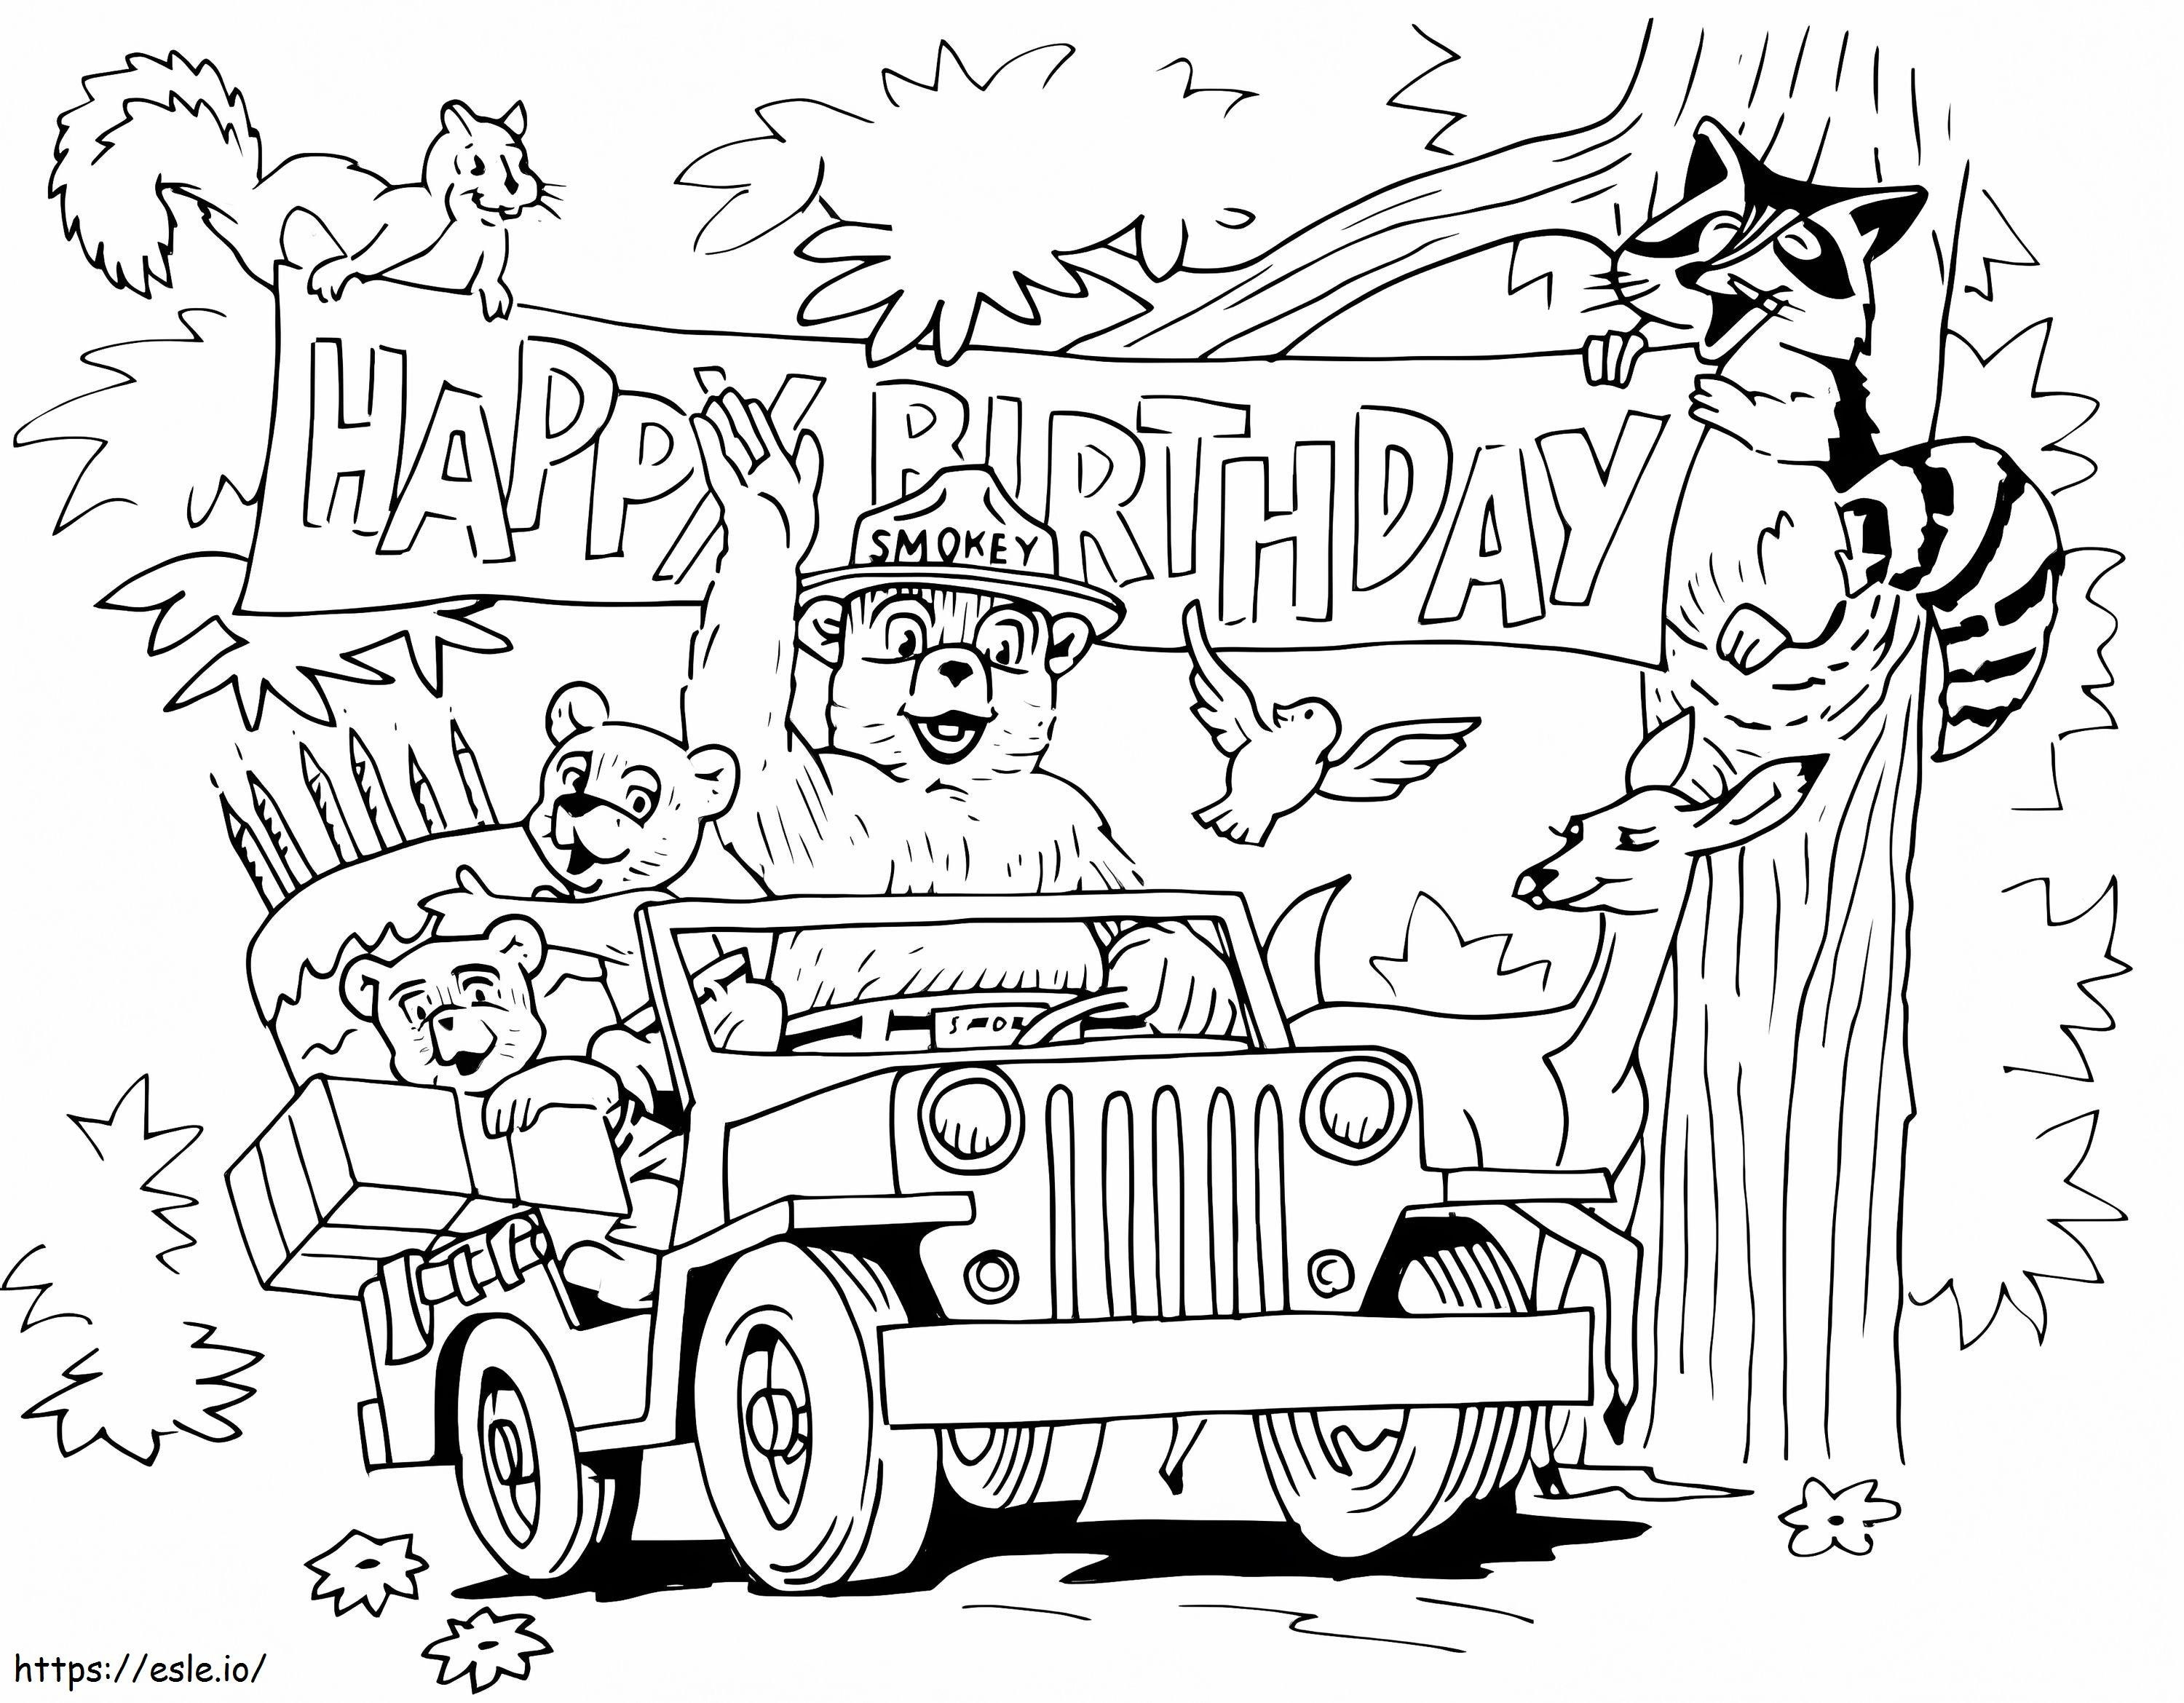 Alles Gute zum Geburtstag, Smoky Bear und Freund ausmalbilder